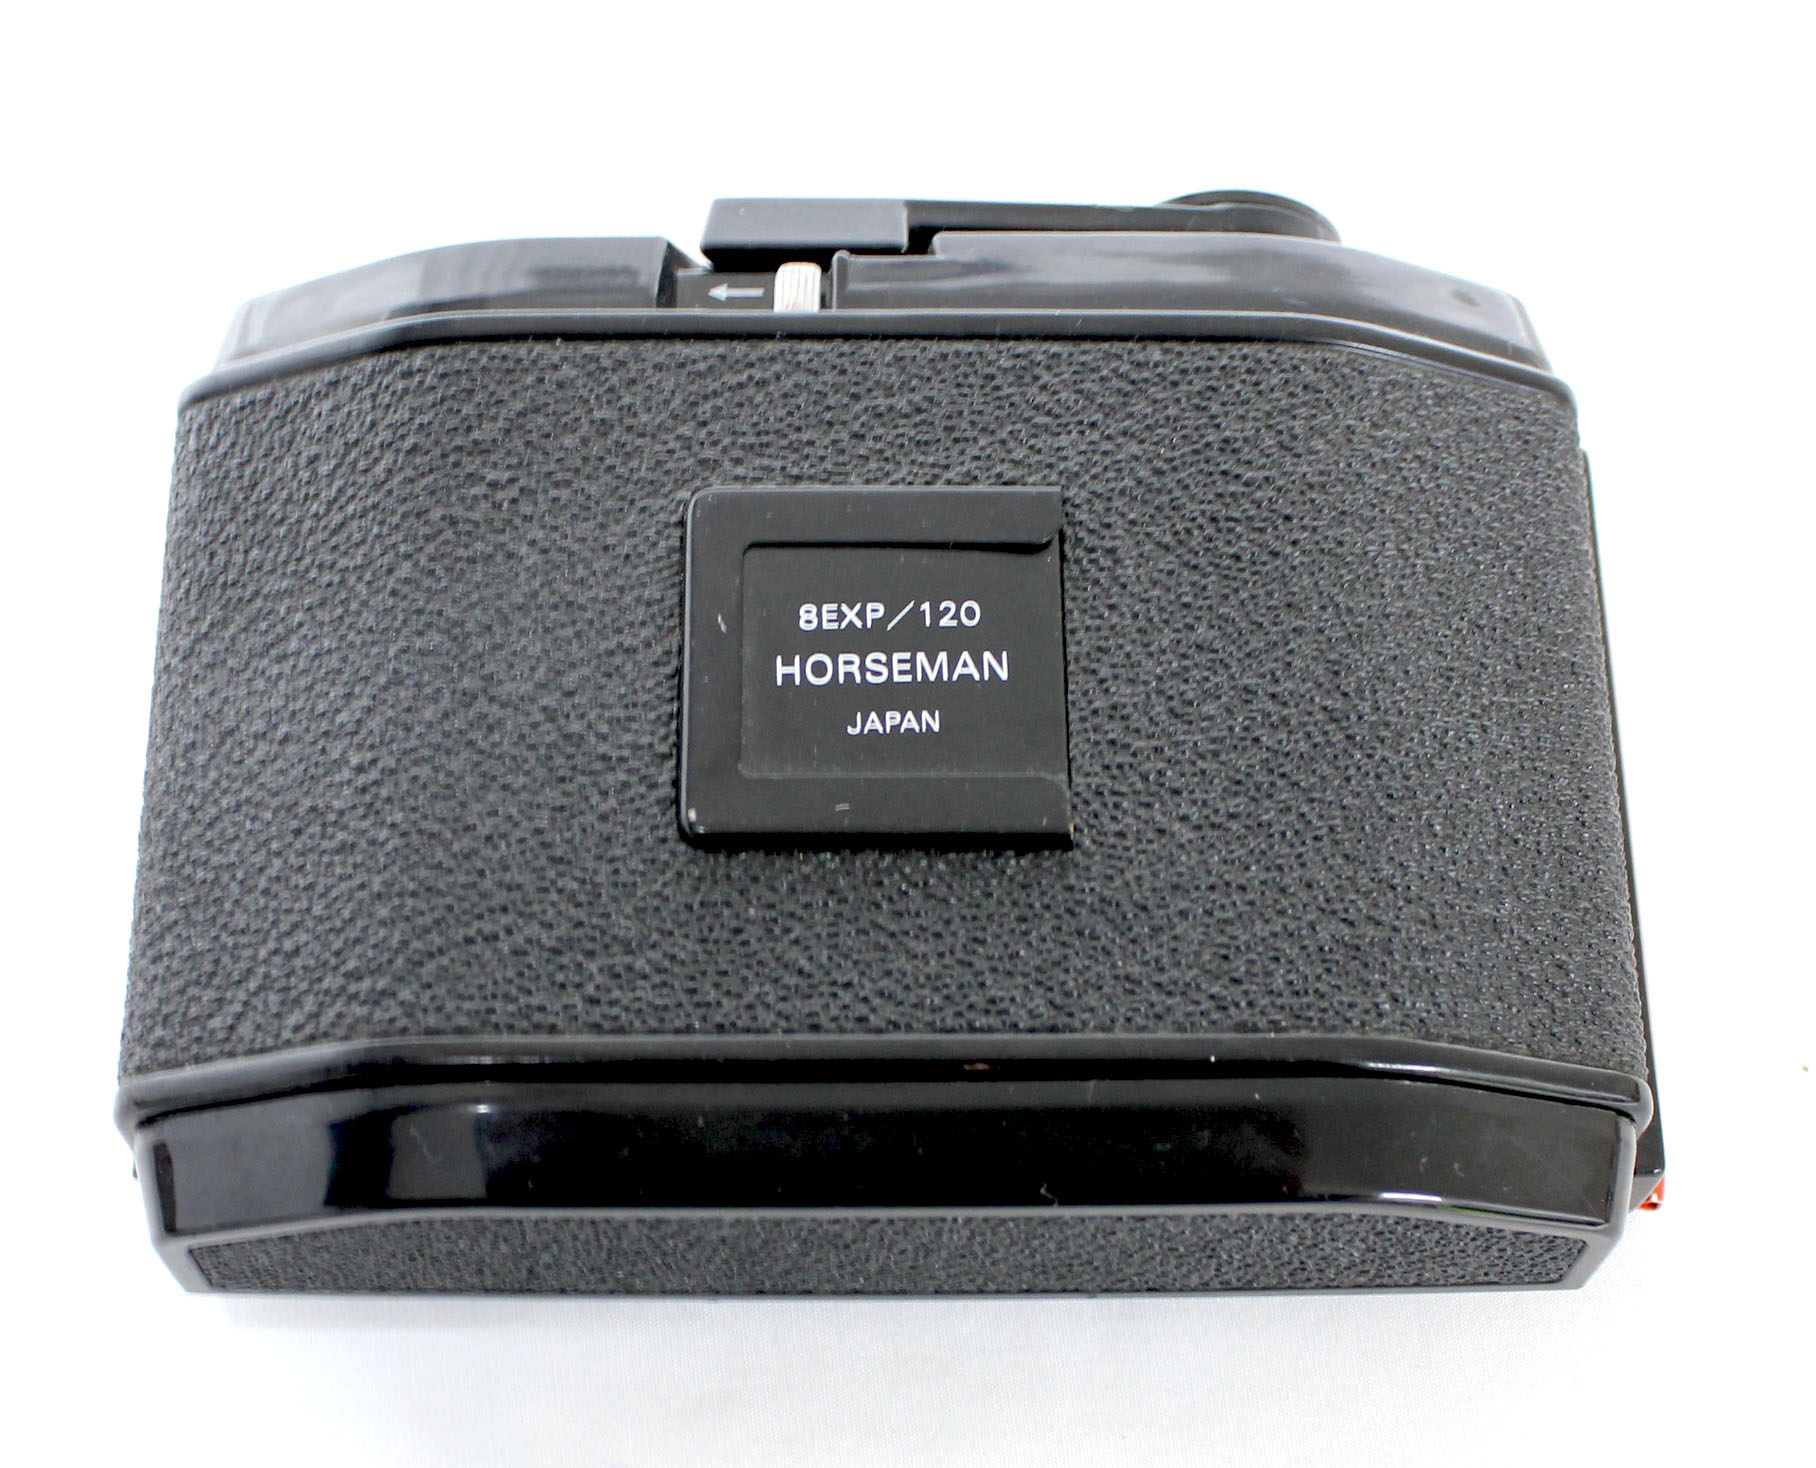 Horseman 8EXP/120 6x9 Roll Film Back Holder for VH, VH-R, 985, 980, 970 from Japan 